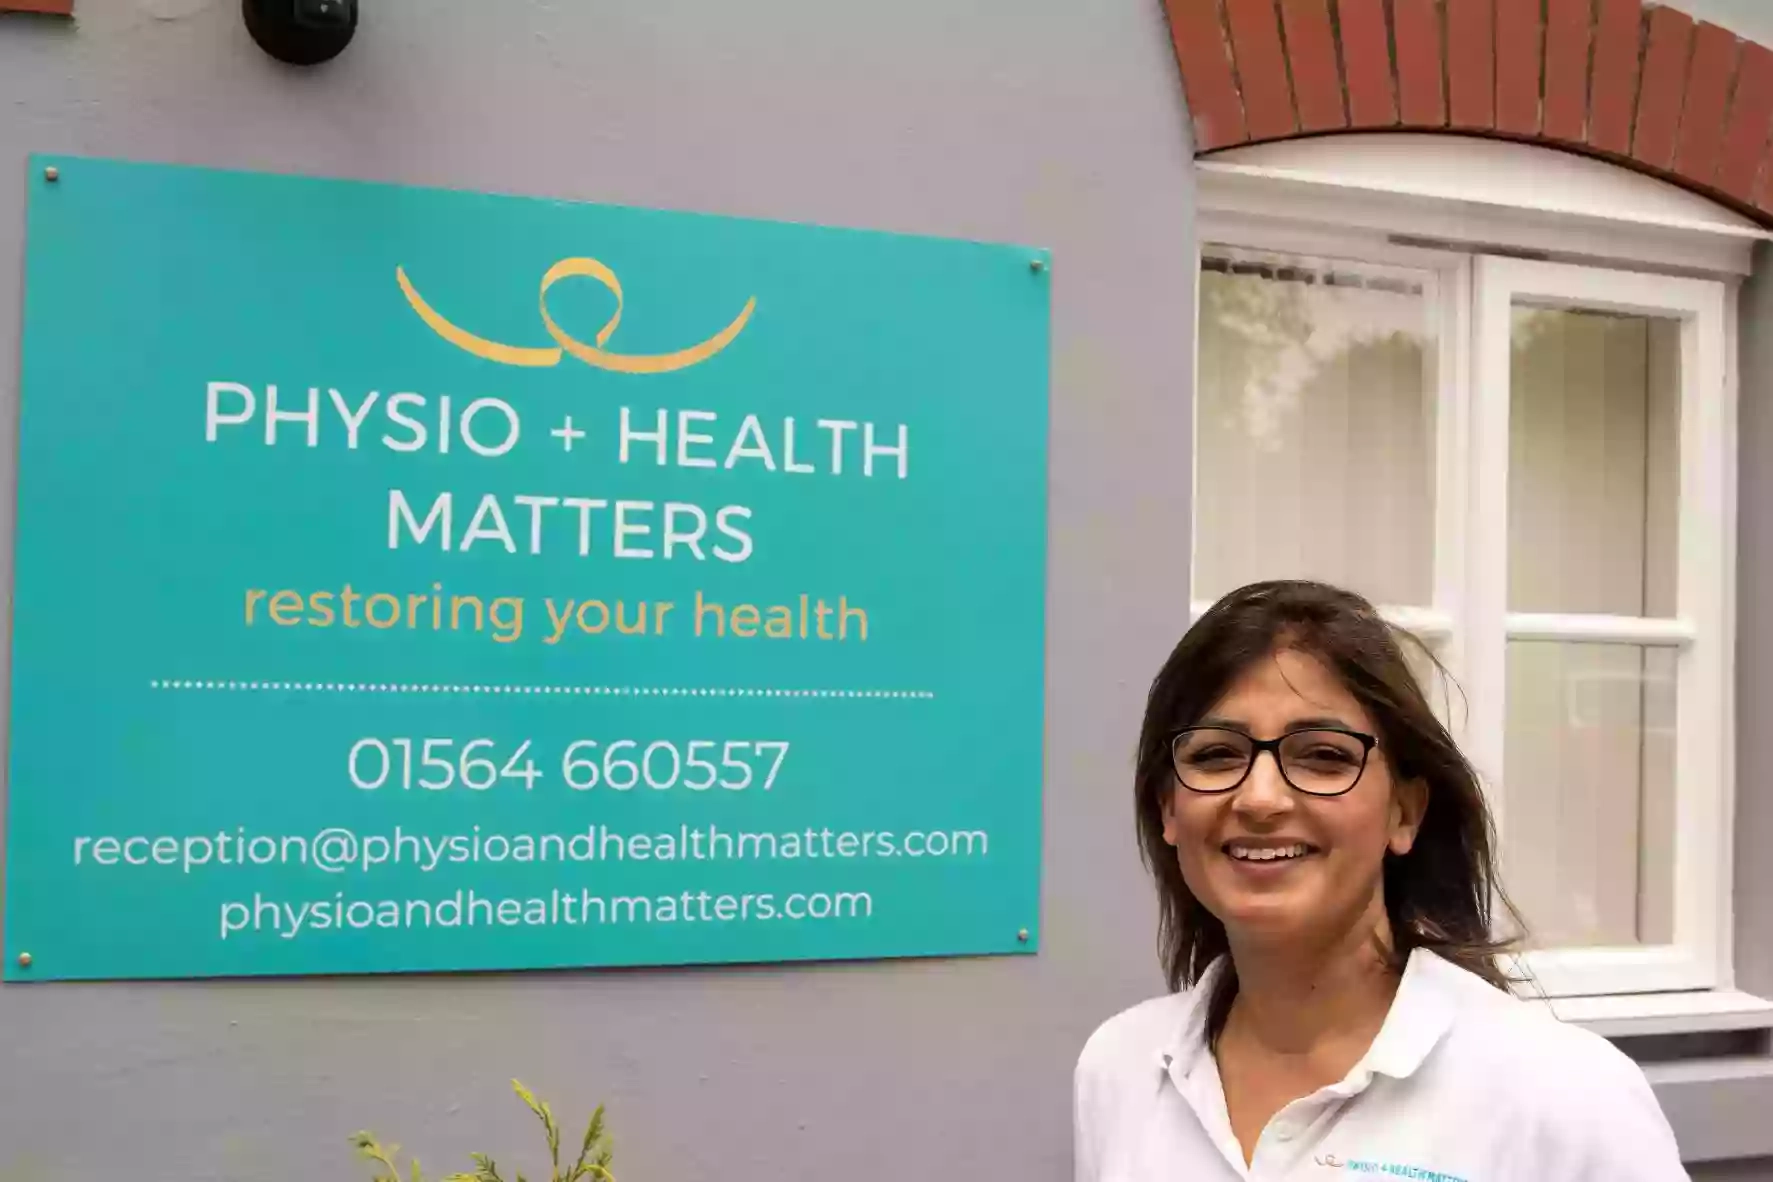 Physio & Health Matters at Sports & Wellness Hub, University of Warwick